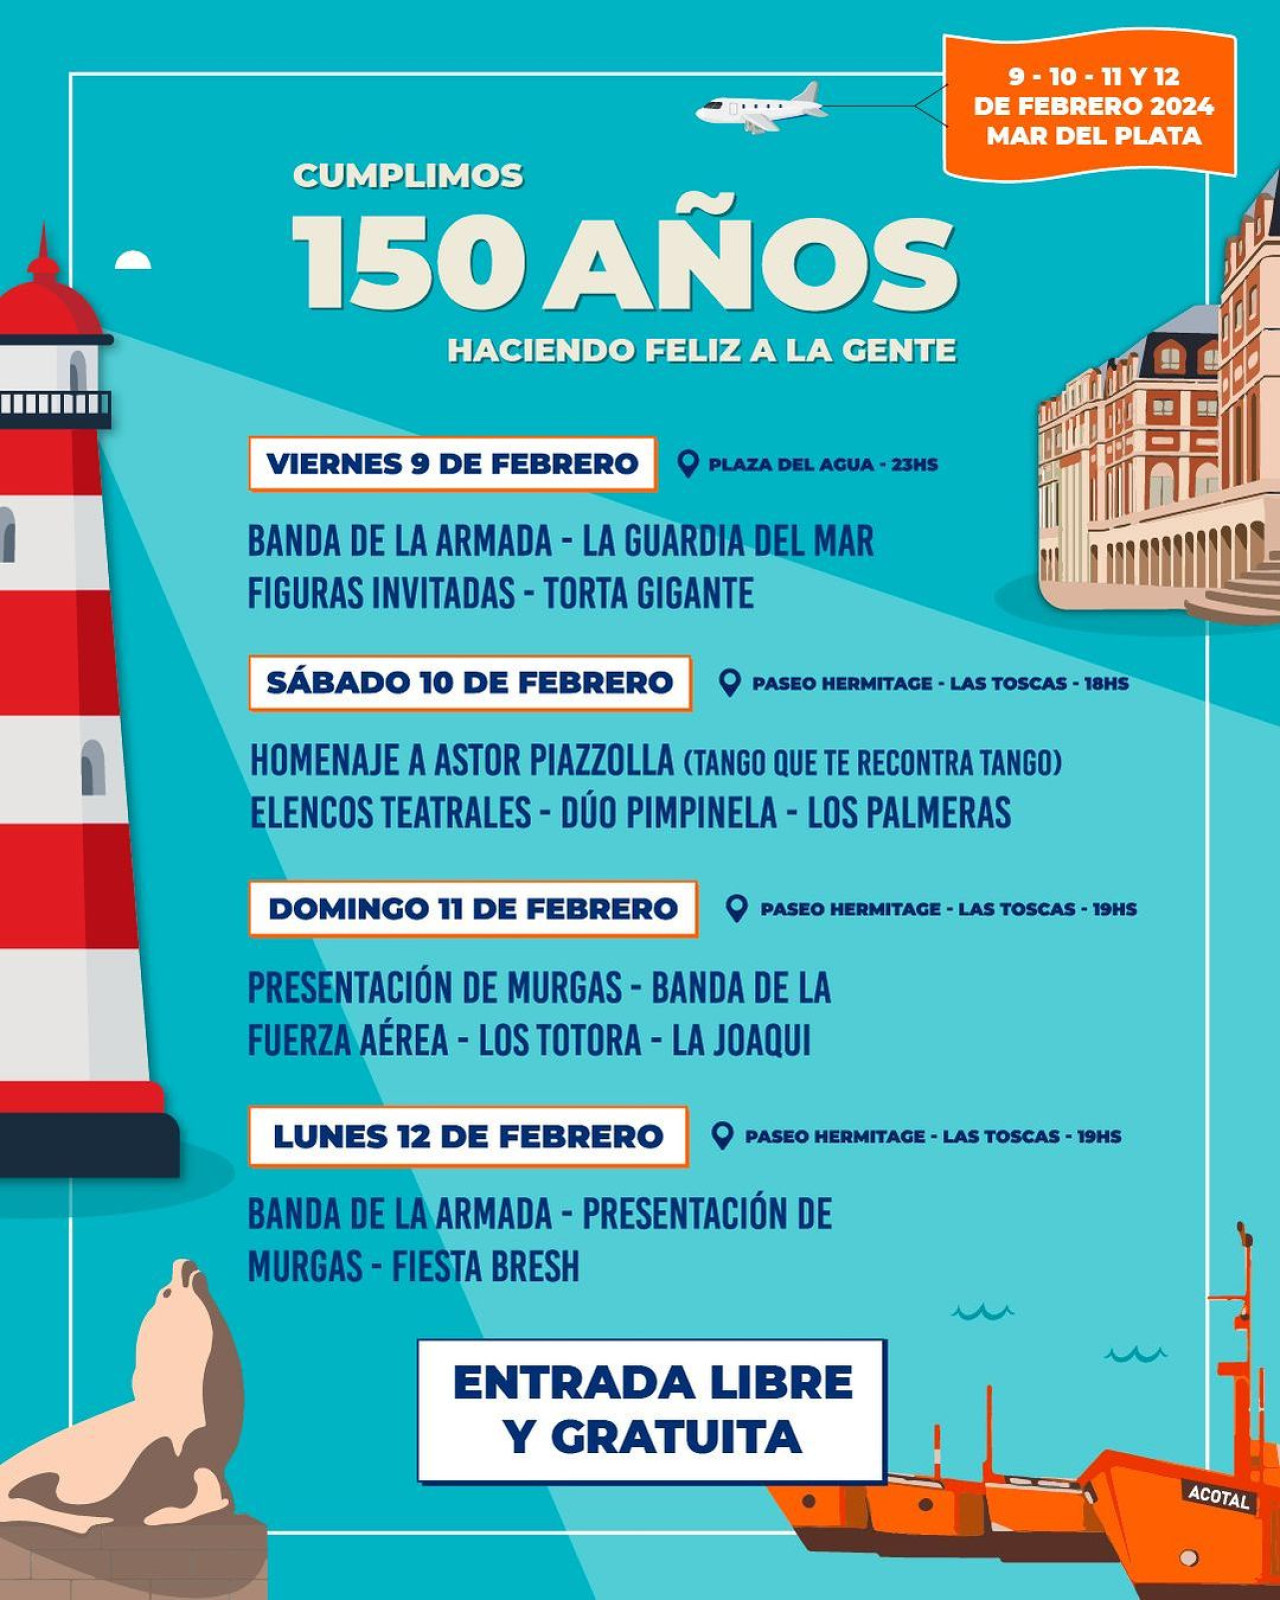 El cronograma del aniversario de Mar del Plata. Foto: Instagram @turismomardelplata.